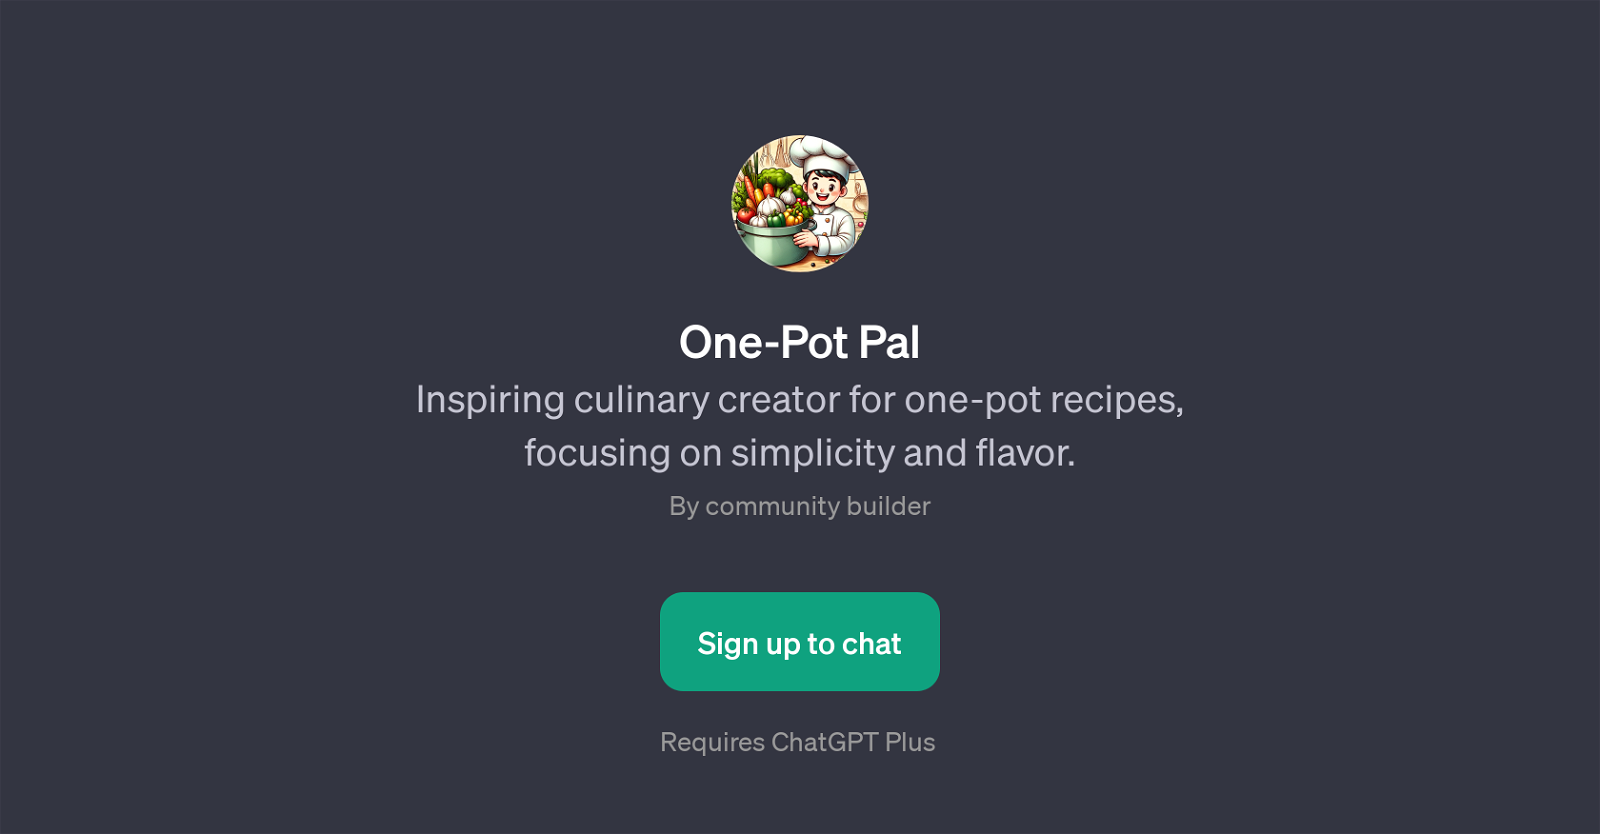 One-Pot Pal website